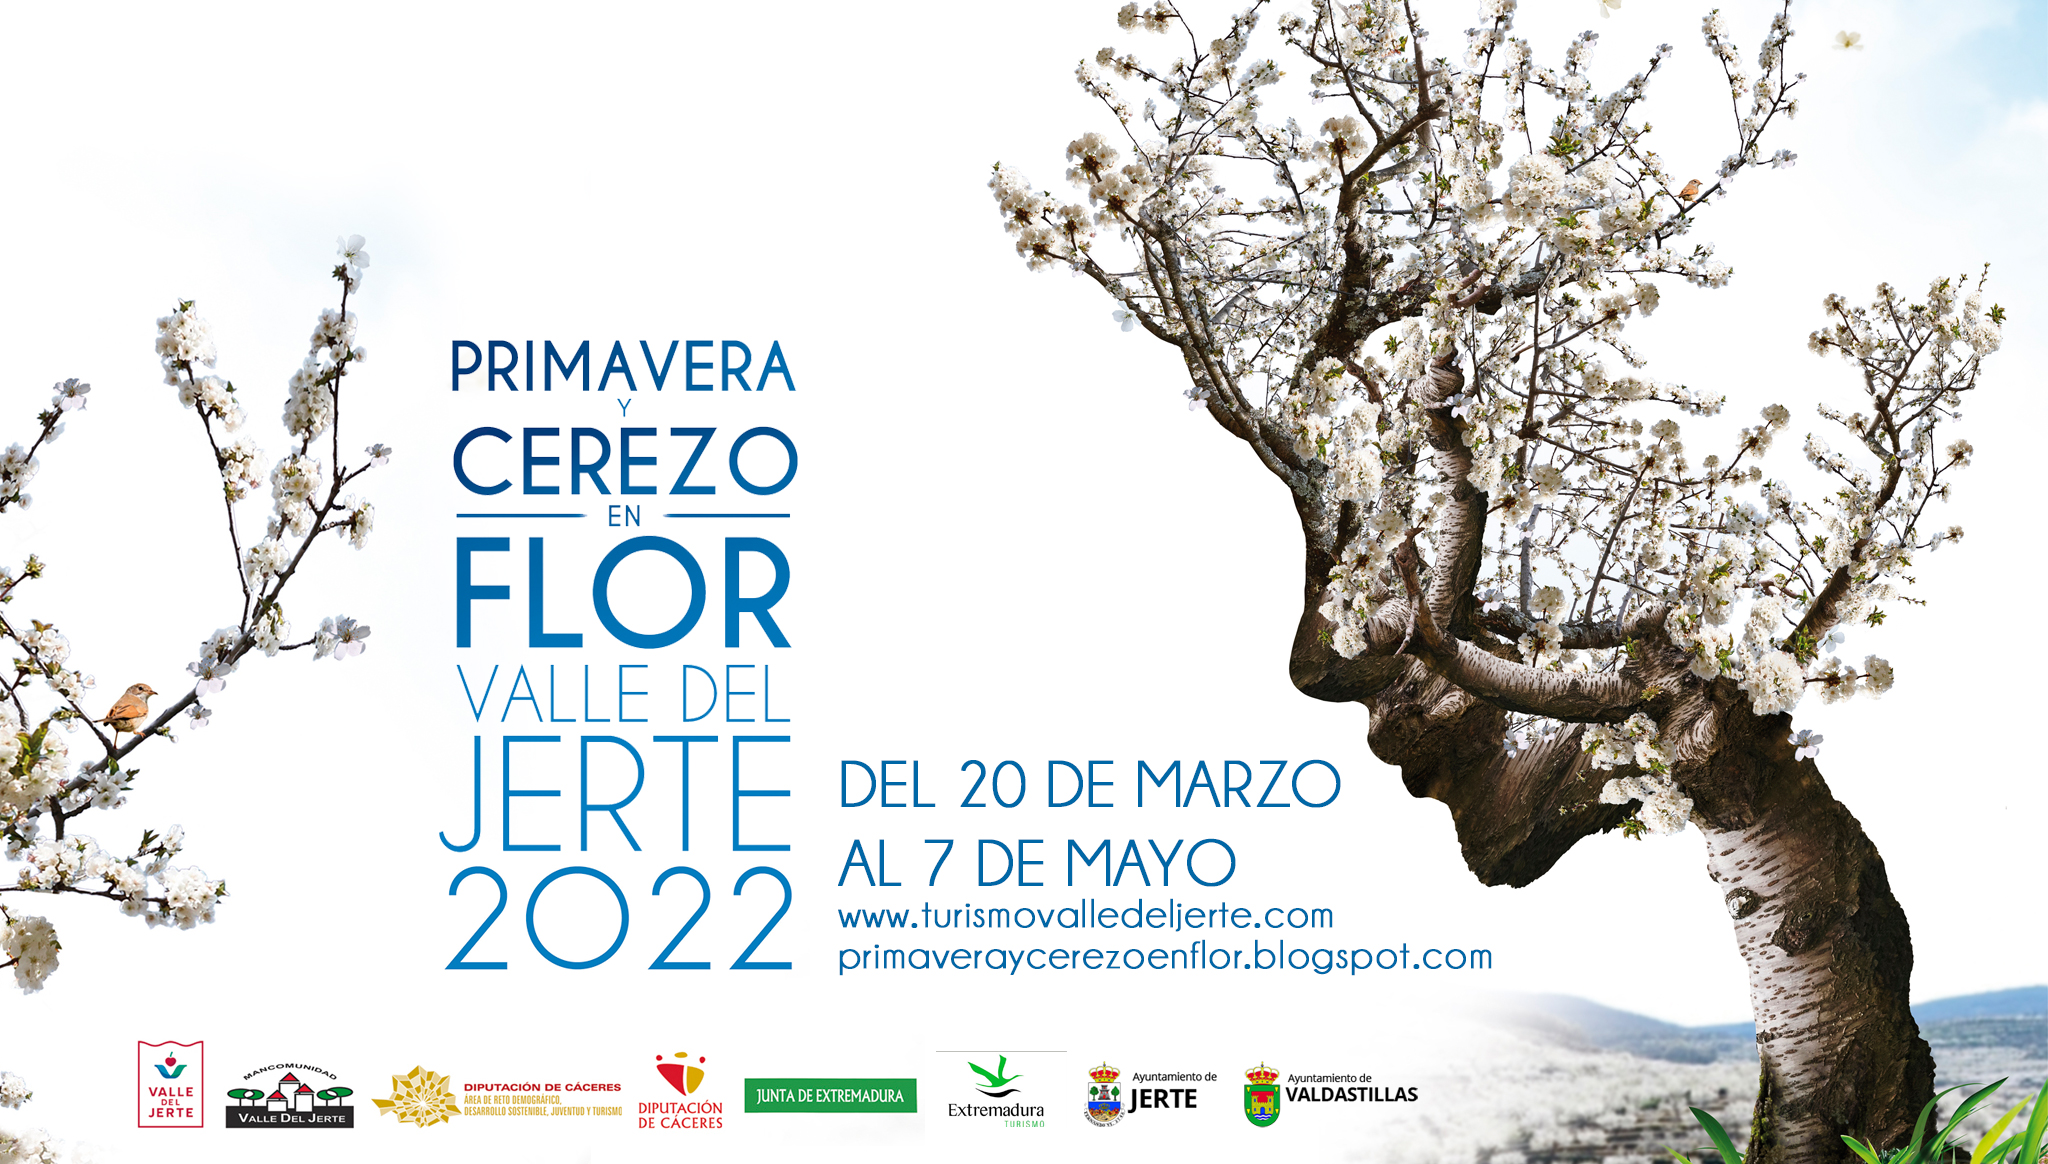 Primavera y Cerezo en Flor 2022. Valle del Jerte